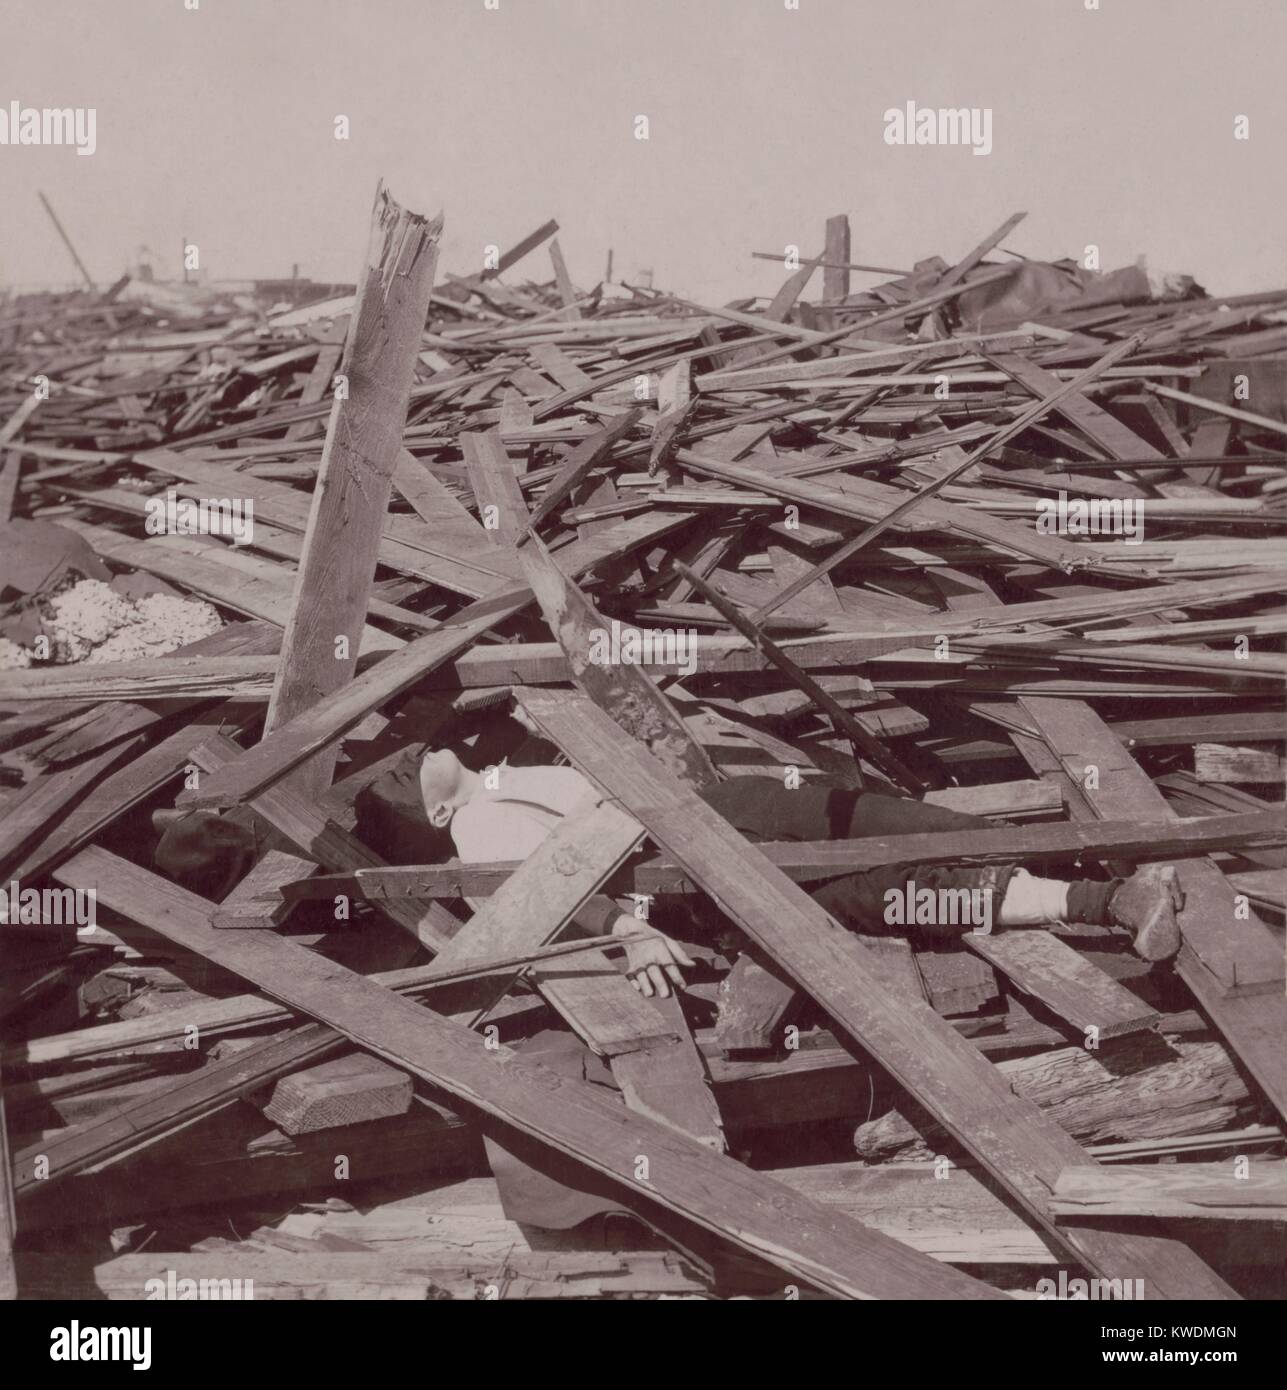 Ein toter Mann unter holz Bohlen nach dem Hurrikan Galveston, Texas, September 8, 1900. 8.000 Menschen sind vermutlich getötet, so dass dies die schlimmste Naturkatastrophe in der Geschichte der USA (BSLOC 2017 17 84) Stockfoto